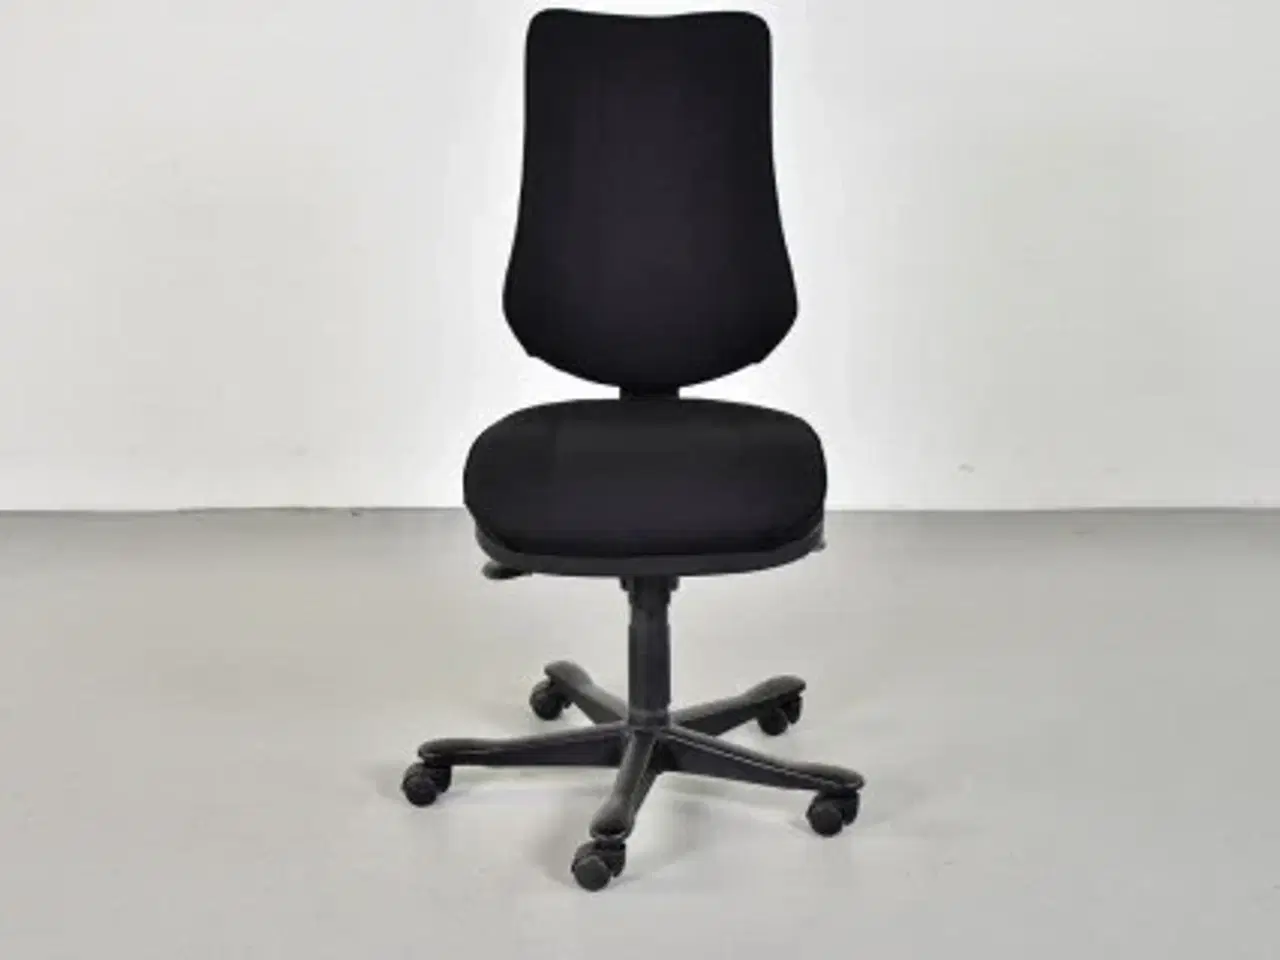 Billede 1 - Rbm model 800 kontorstol med høj ryg og nyt sort polster